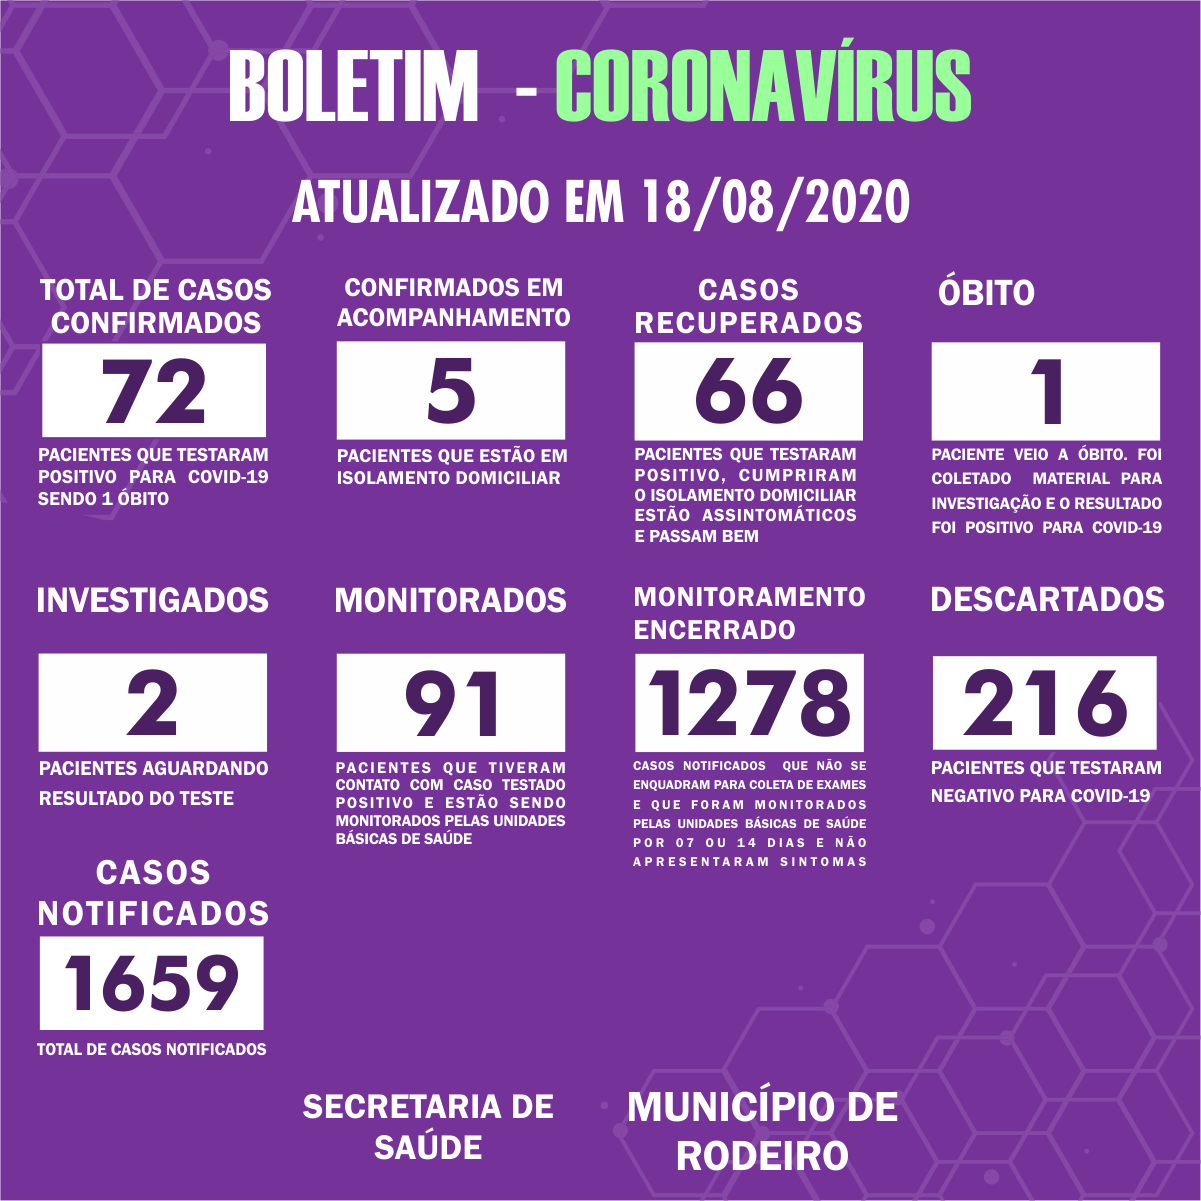 Boletim Epidemiológico do Município de Rodeiro sobre coronavírus, atualizado em 18/08/2020